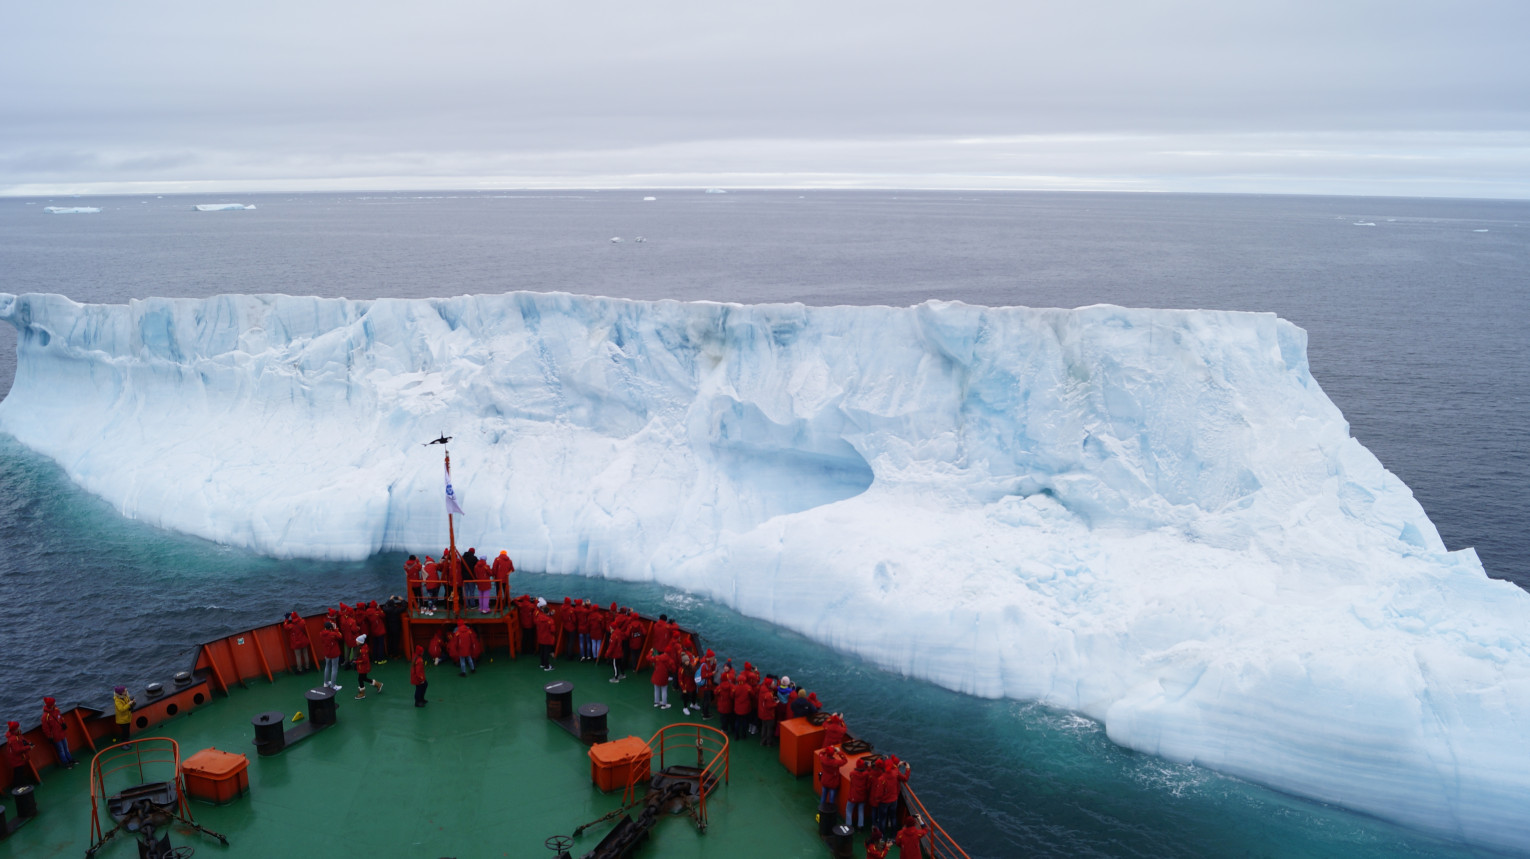 Встреча ледокола с айсбергом во время экспедиции на Северный полюс. Фото: Кирилл Крылов, участник конкурса РГО 